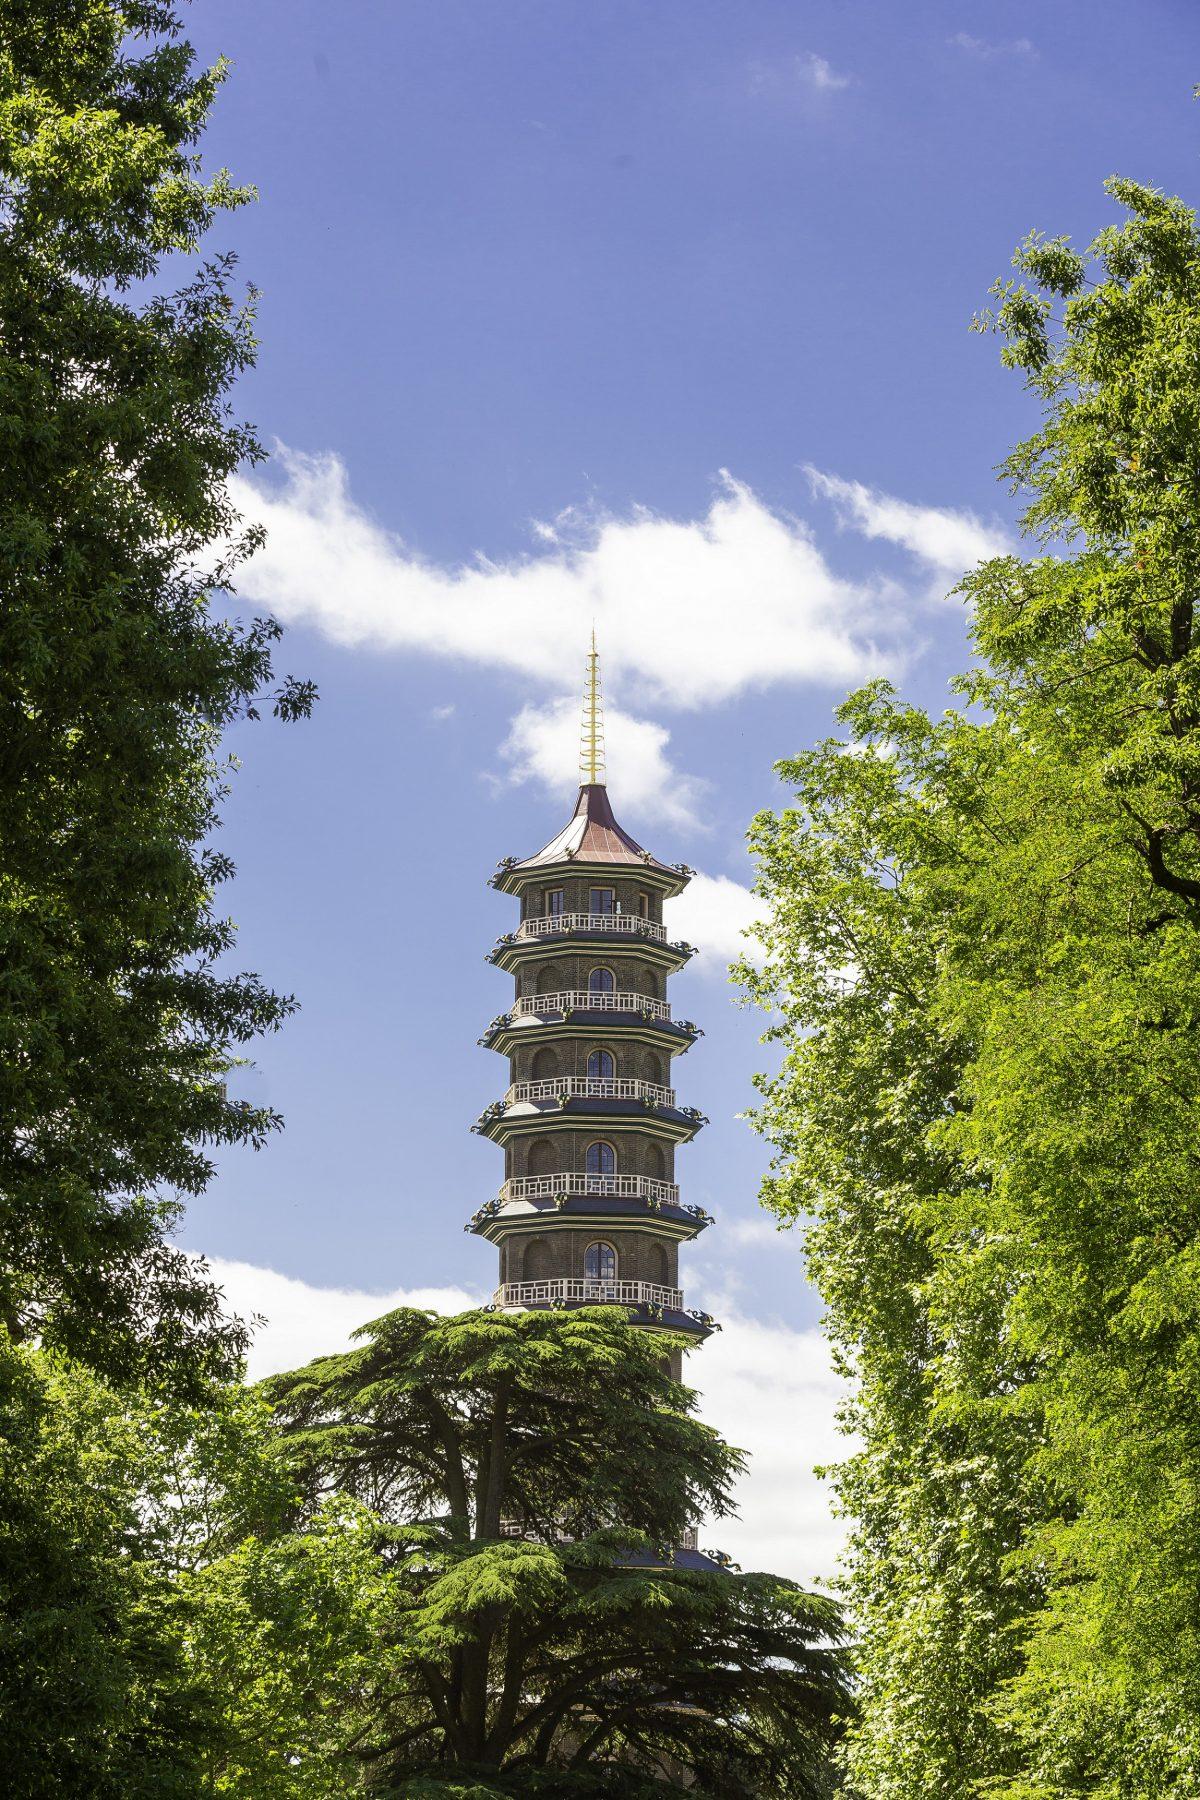 Sir William Chambers's restored Great Pagoda at Kew Gardens. (Richard Lea-Hair/Historic Royal Palaces)